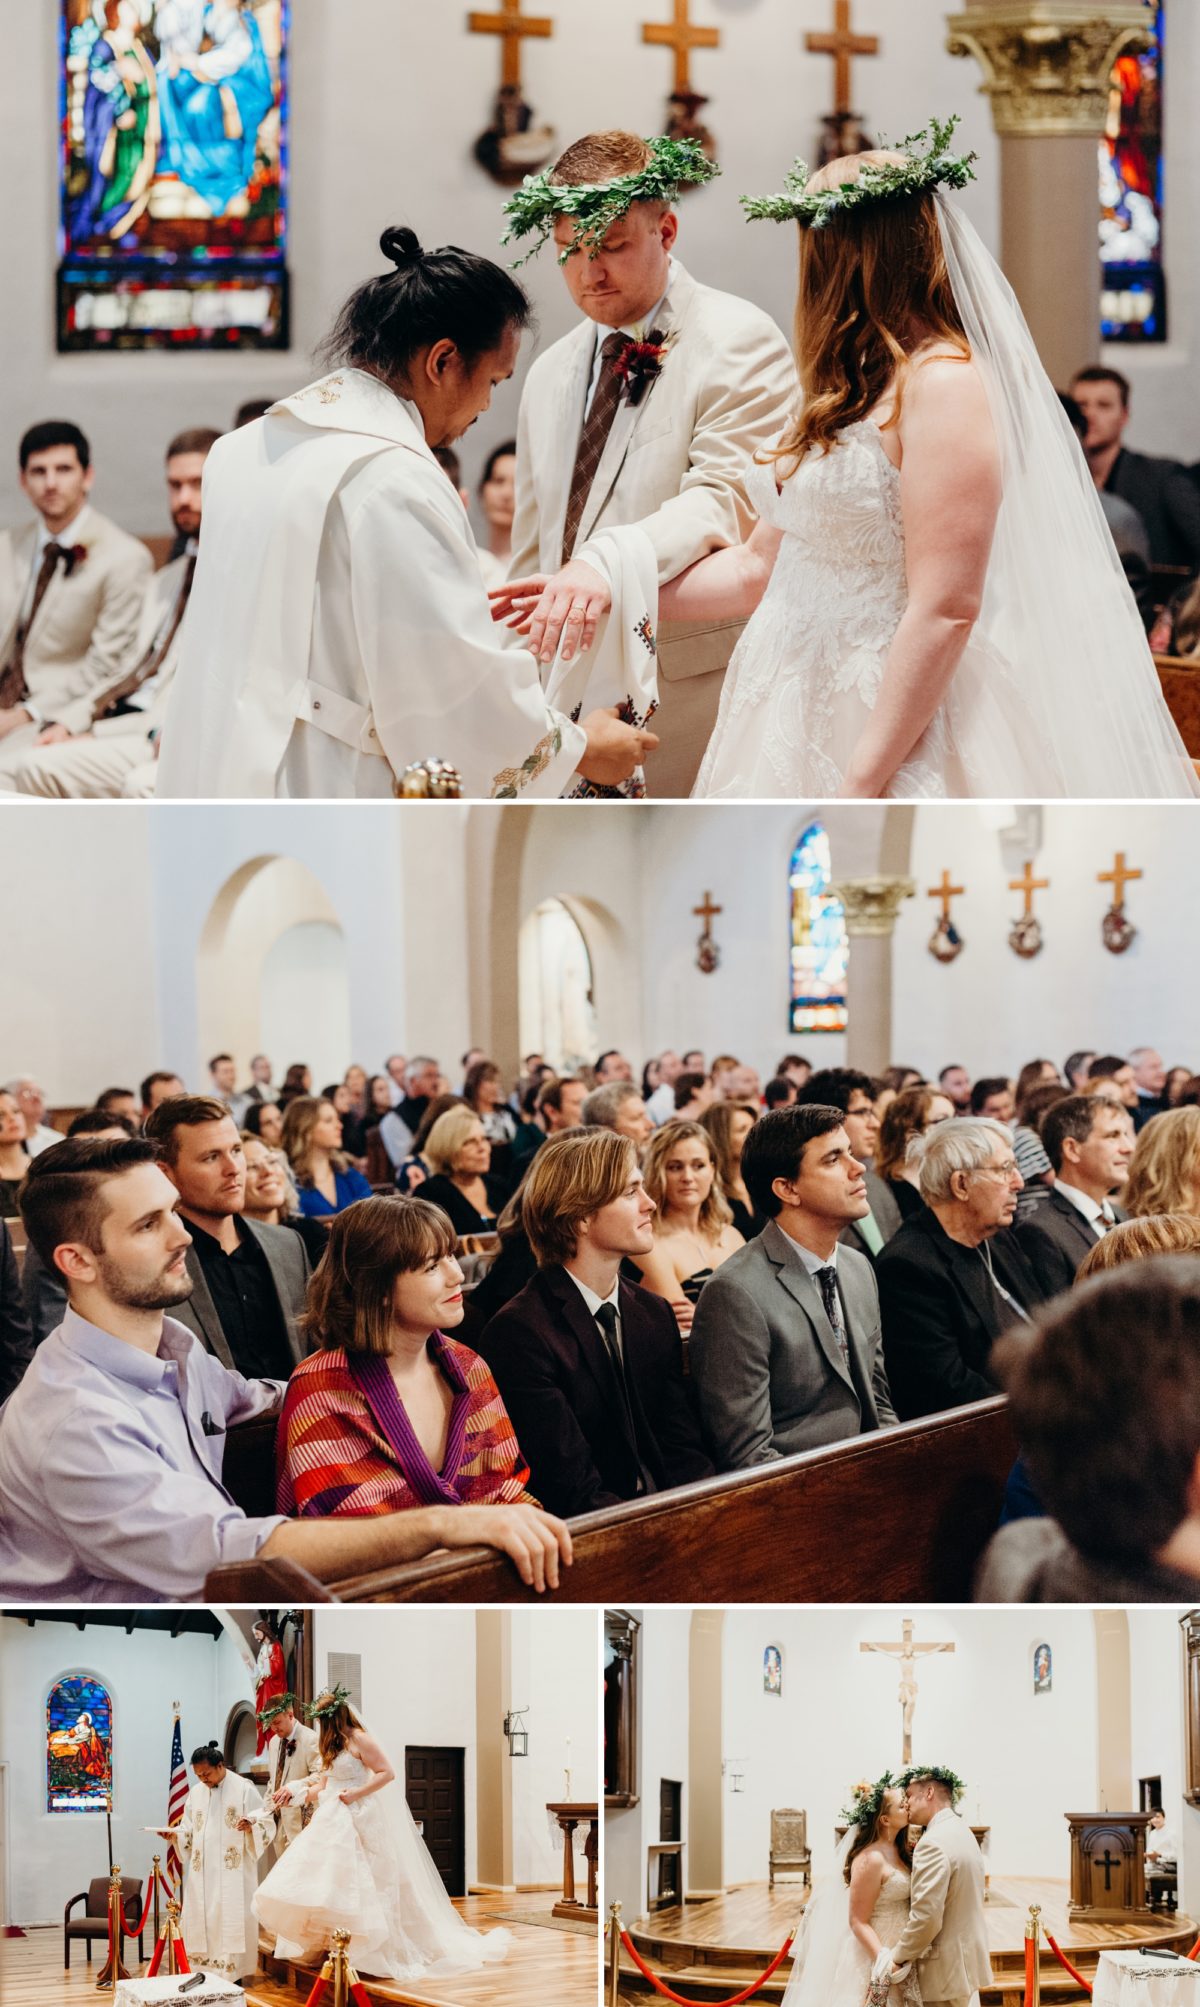 Catholic wedding in Gridley, CA by Briana Morrison